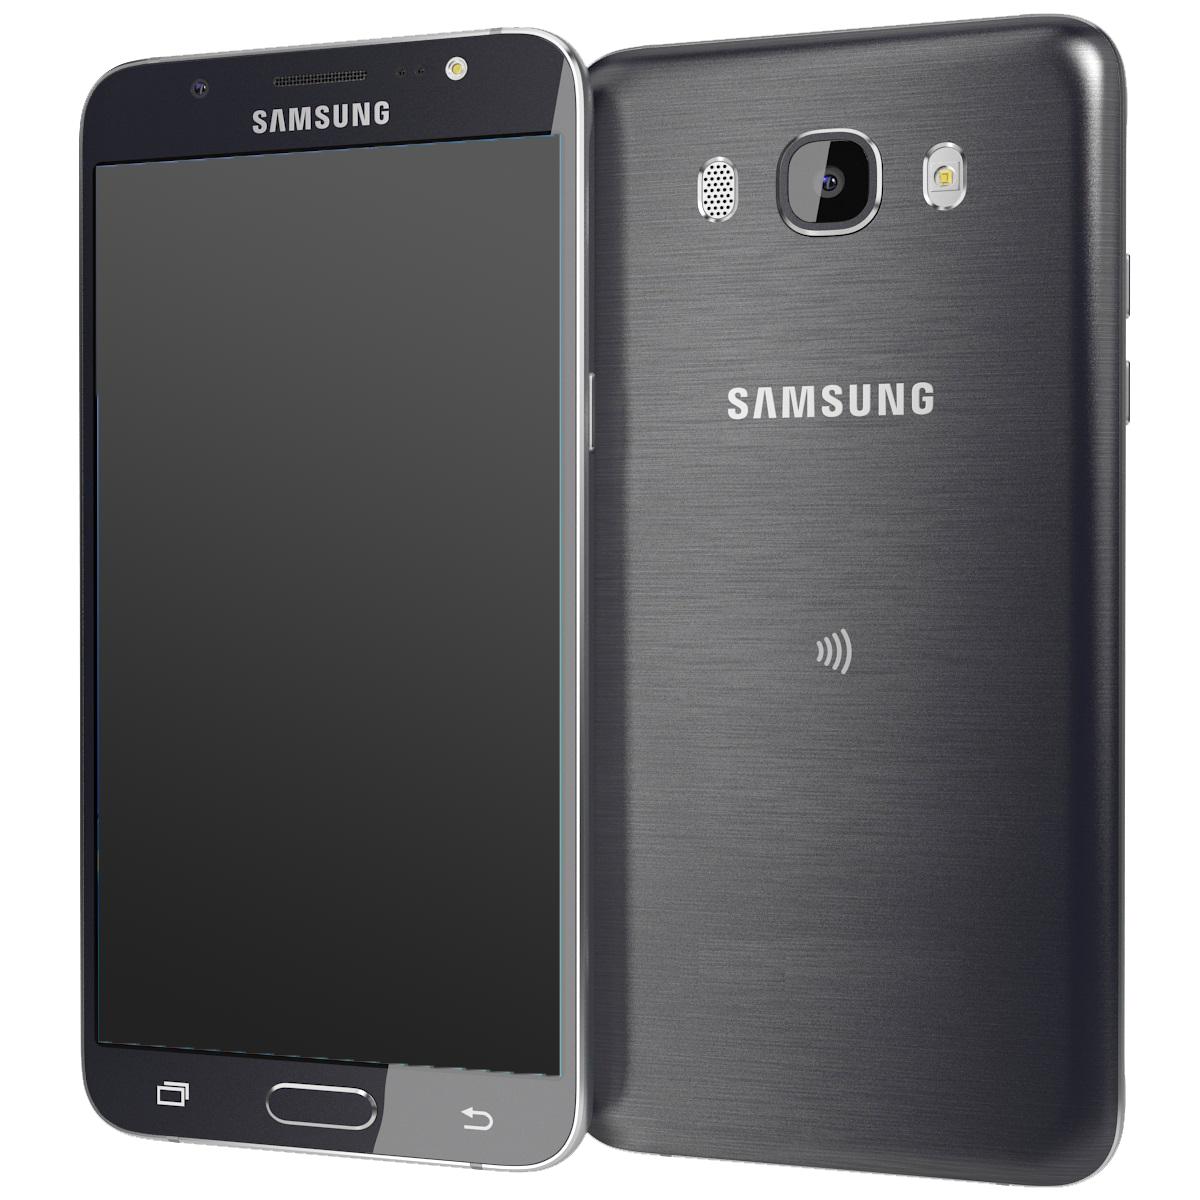 Samsung Galaxy J5 (2016) schwarz - Ohne Vertrag